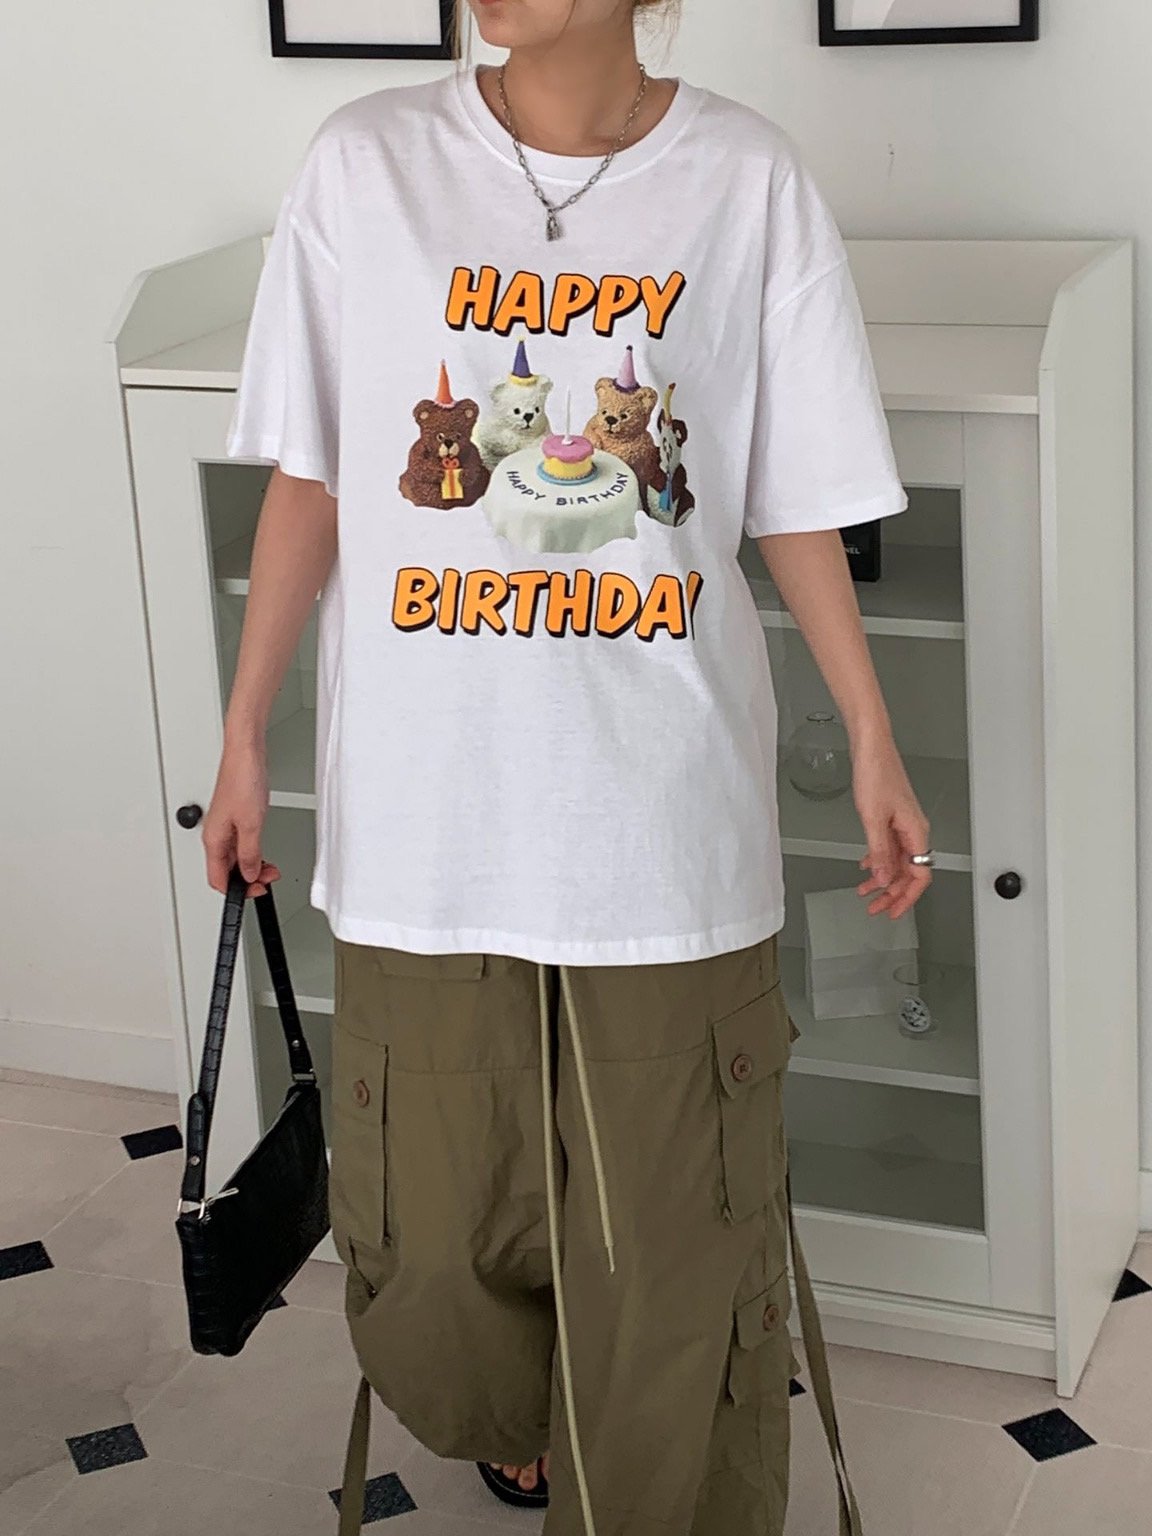 Happy Birthday Tshirts